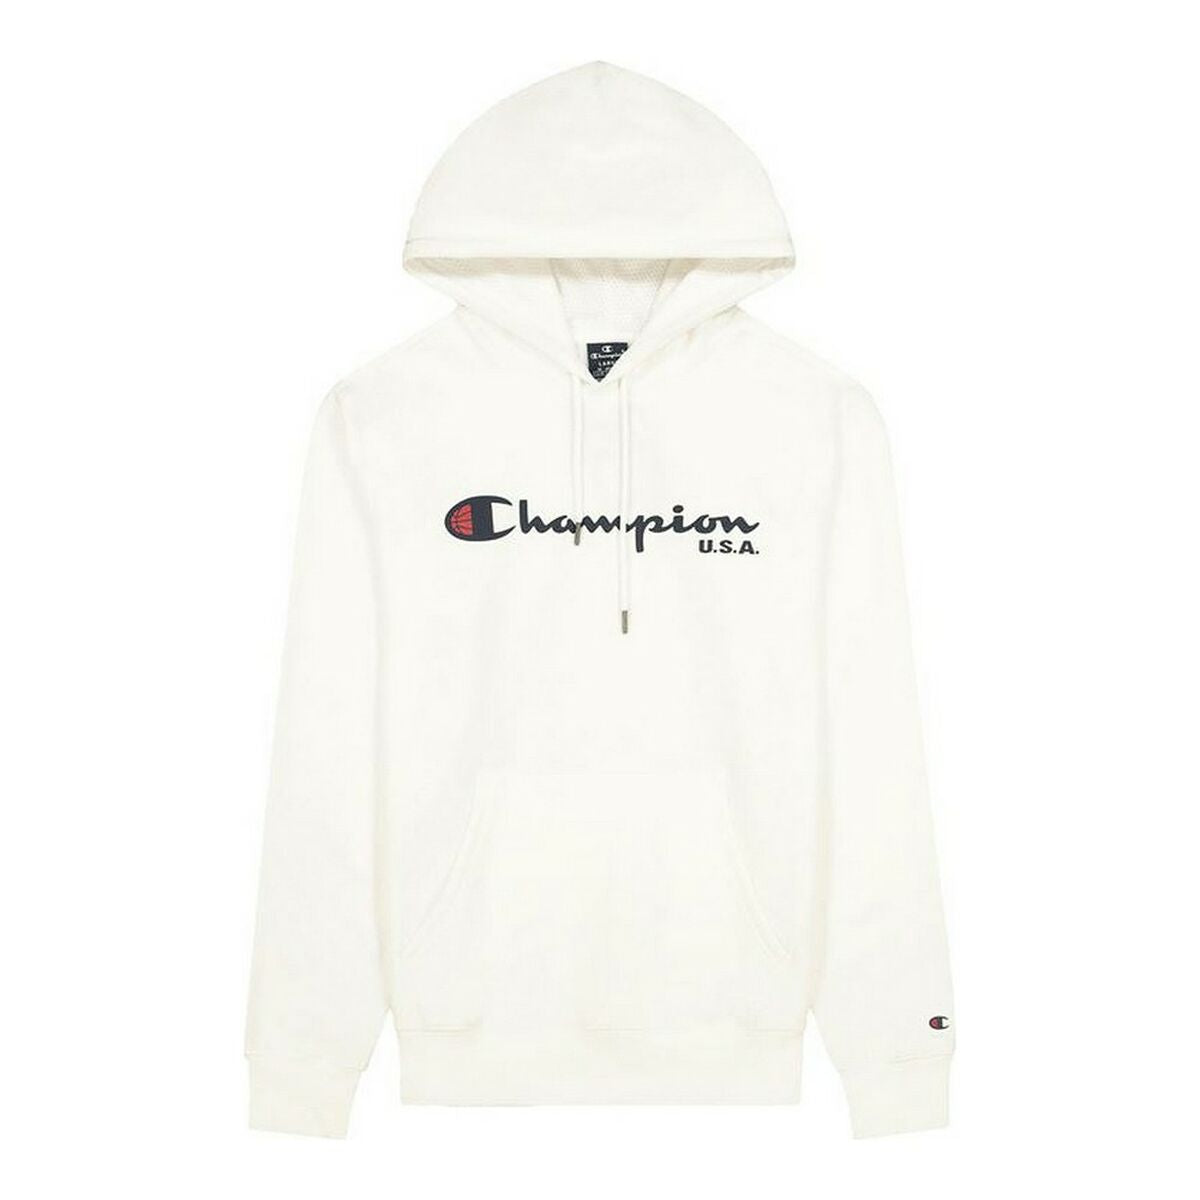 Kaufe Herren Sweater mit Kapuze Champion USA Logo Weiß bei AWK Flagship um € 69.00